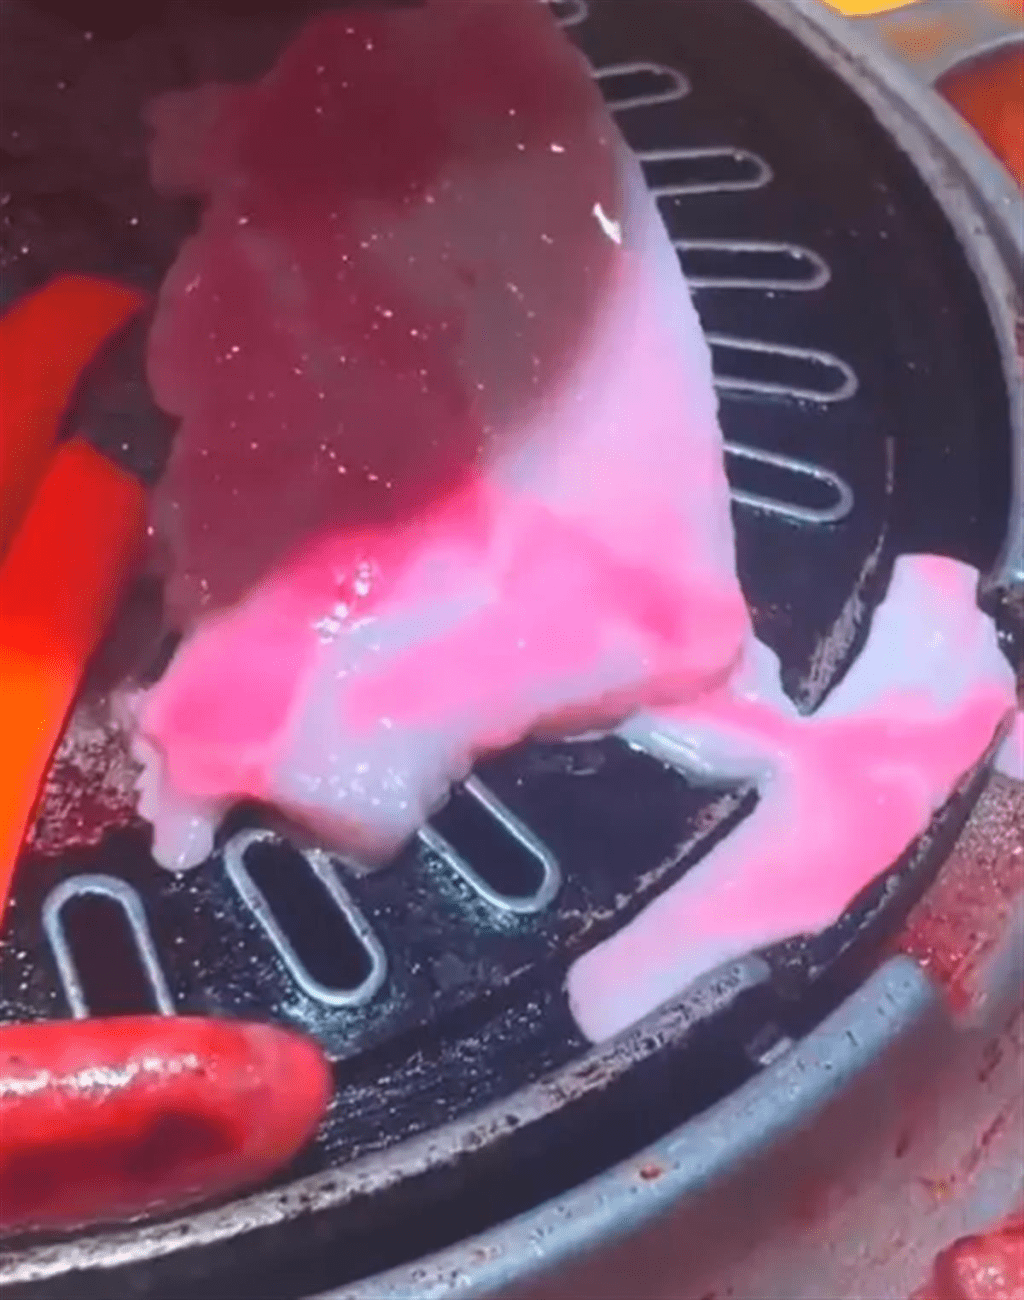 深圳烤肉店五花腩流粉色不明液體，引發熱議。